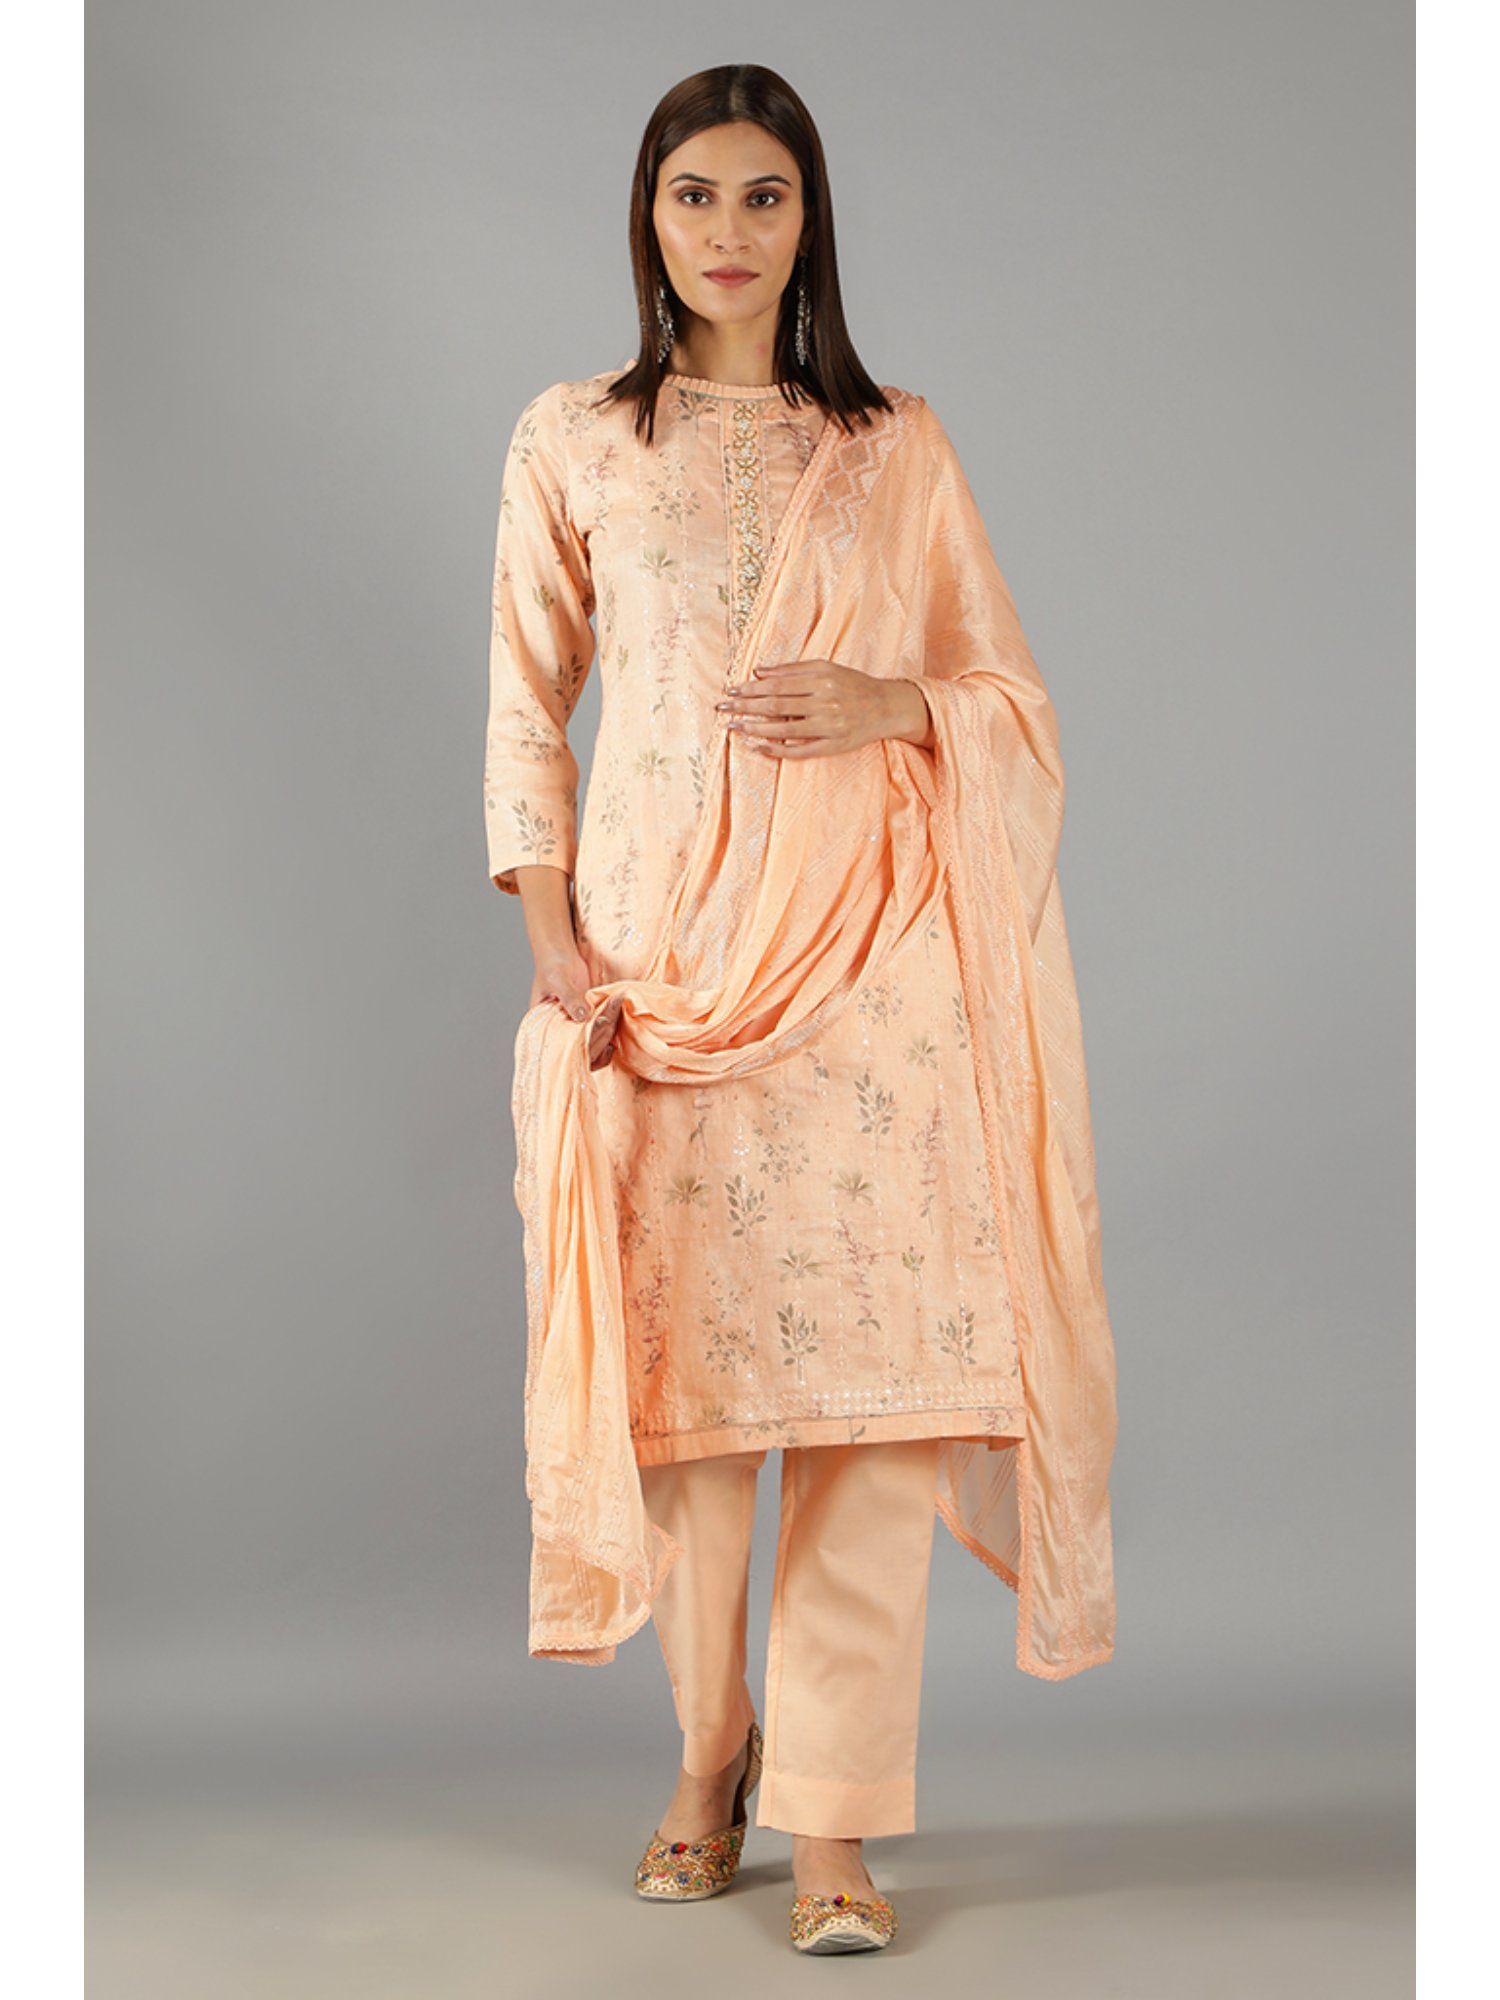 barara-ethnics-light-orange-floral-printed-embroidery-kurta